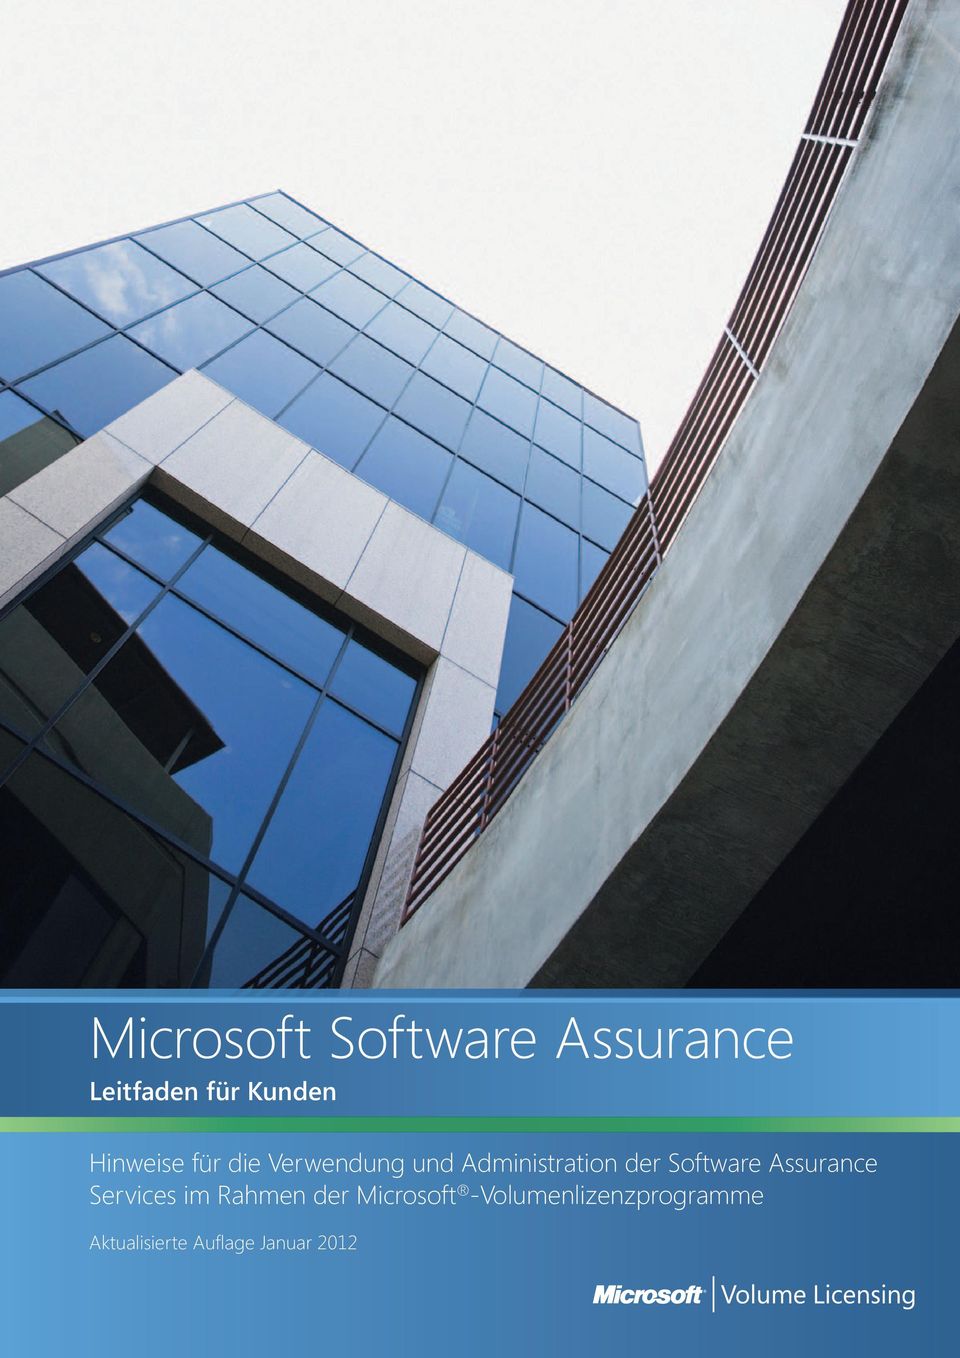 Software Assurance Services im Rahmen der Microsoft